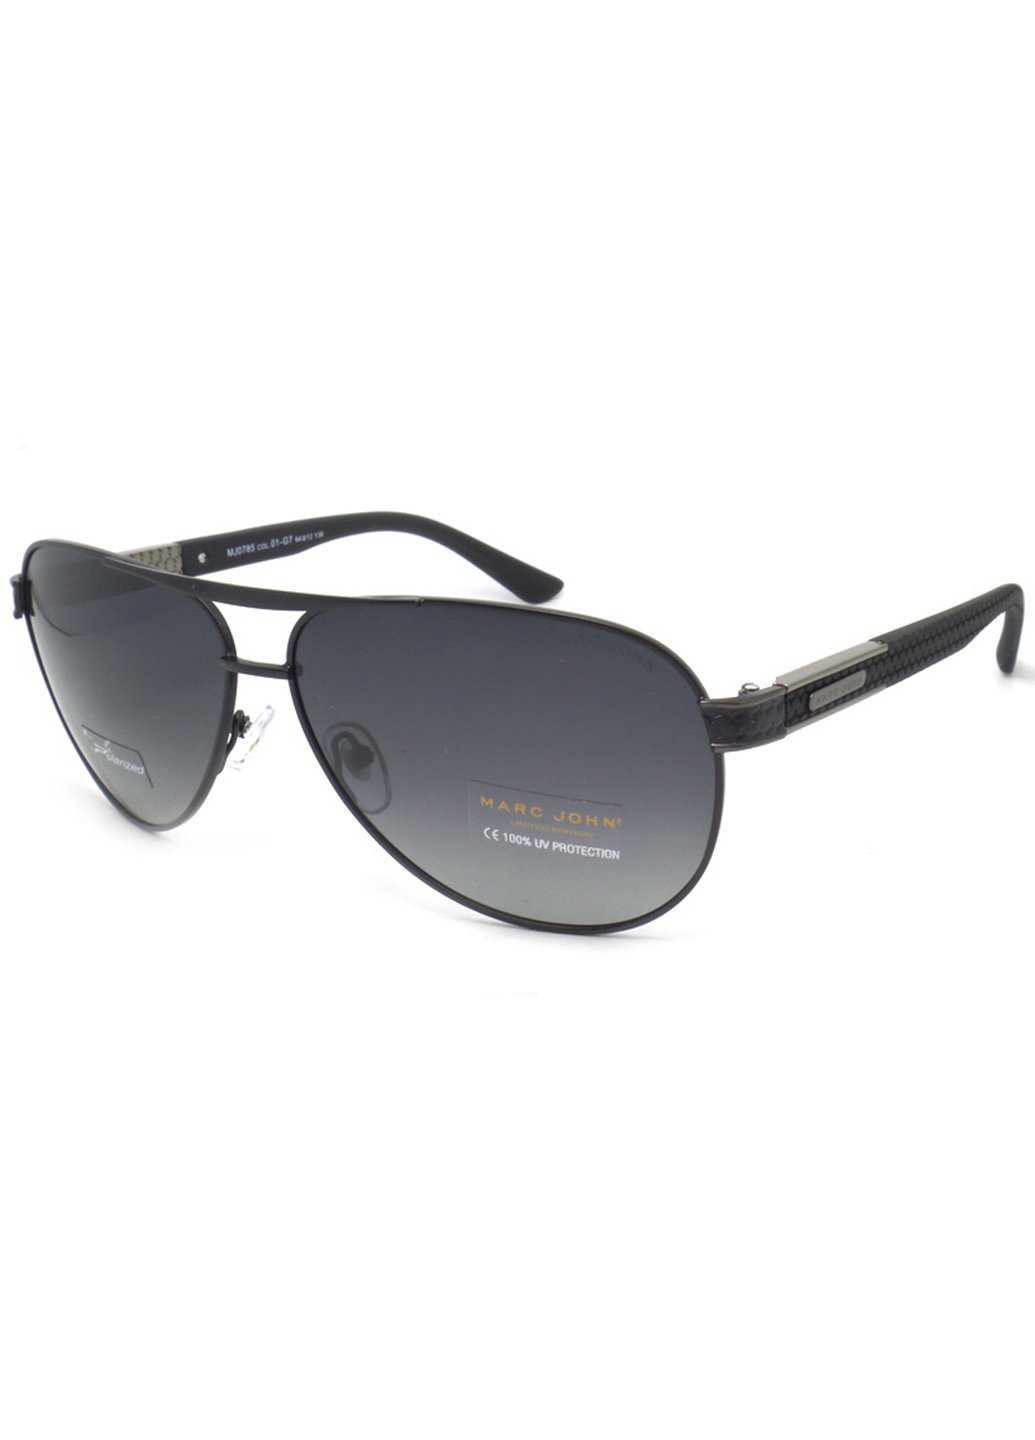 Купить Мужские солнцезащитные очки Marc John с поляризацией MJ0785 190023 - Черный в интернет-магазине